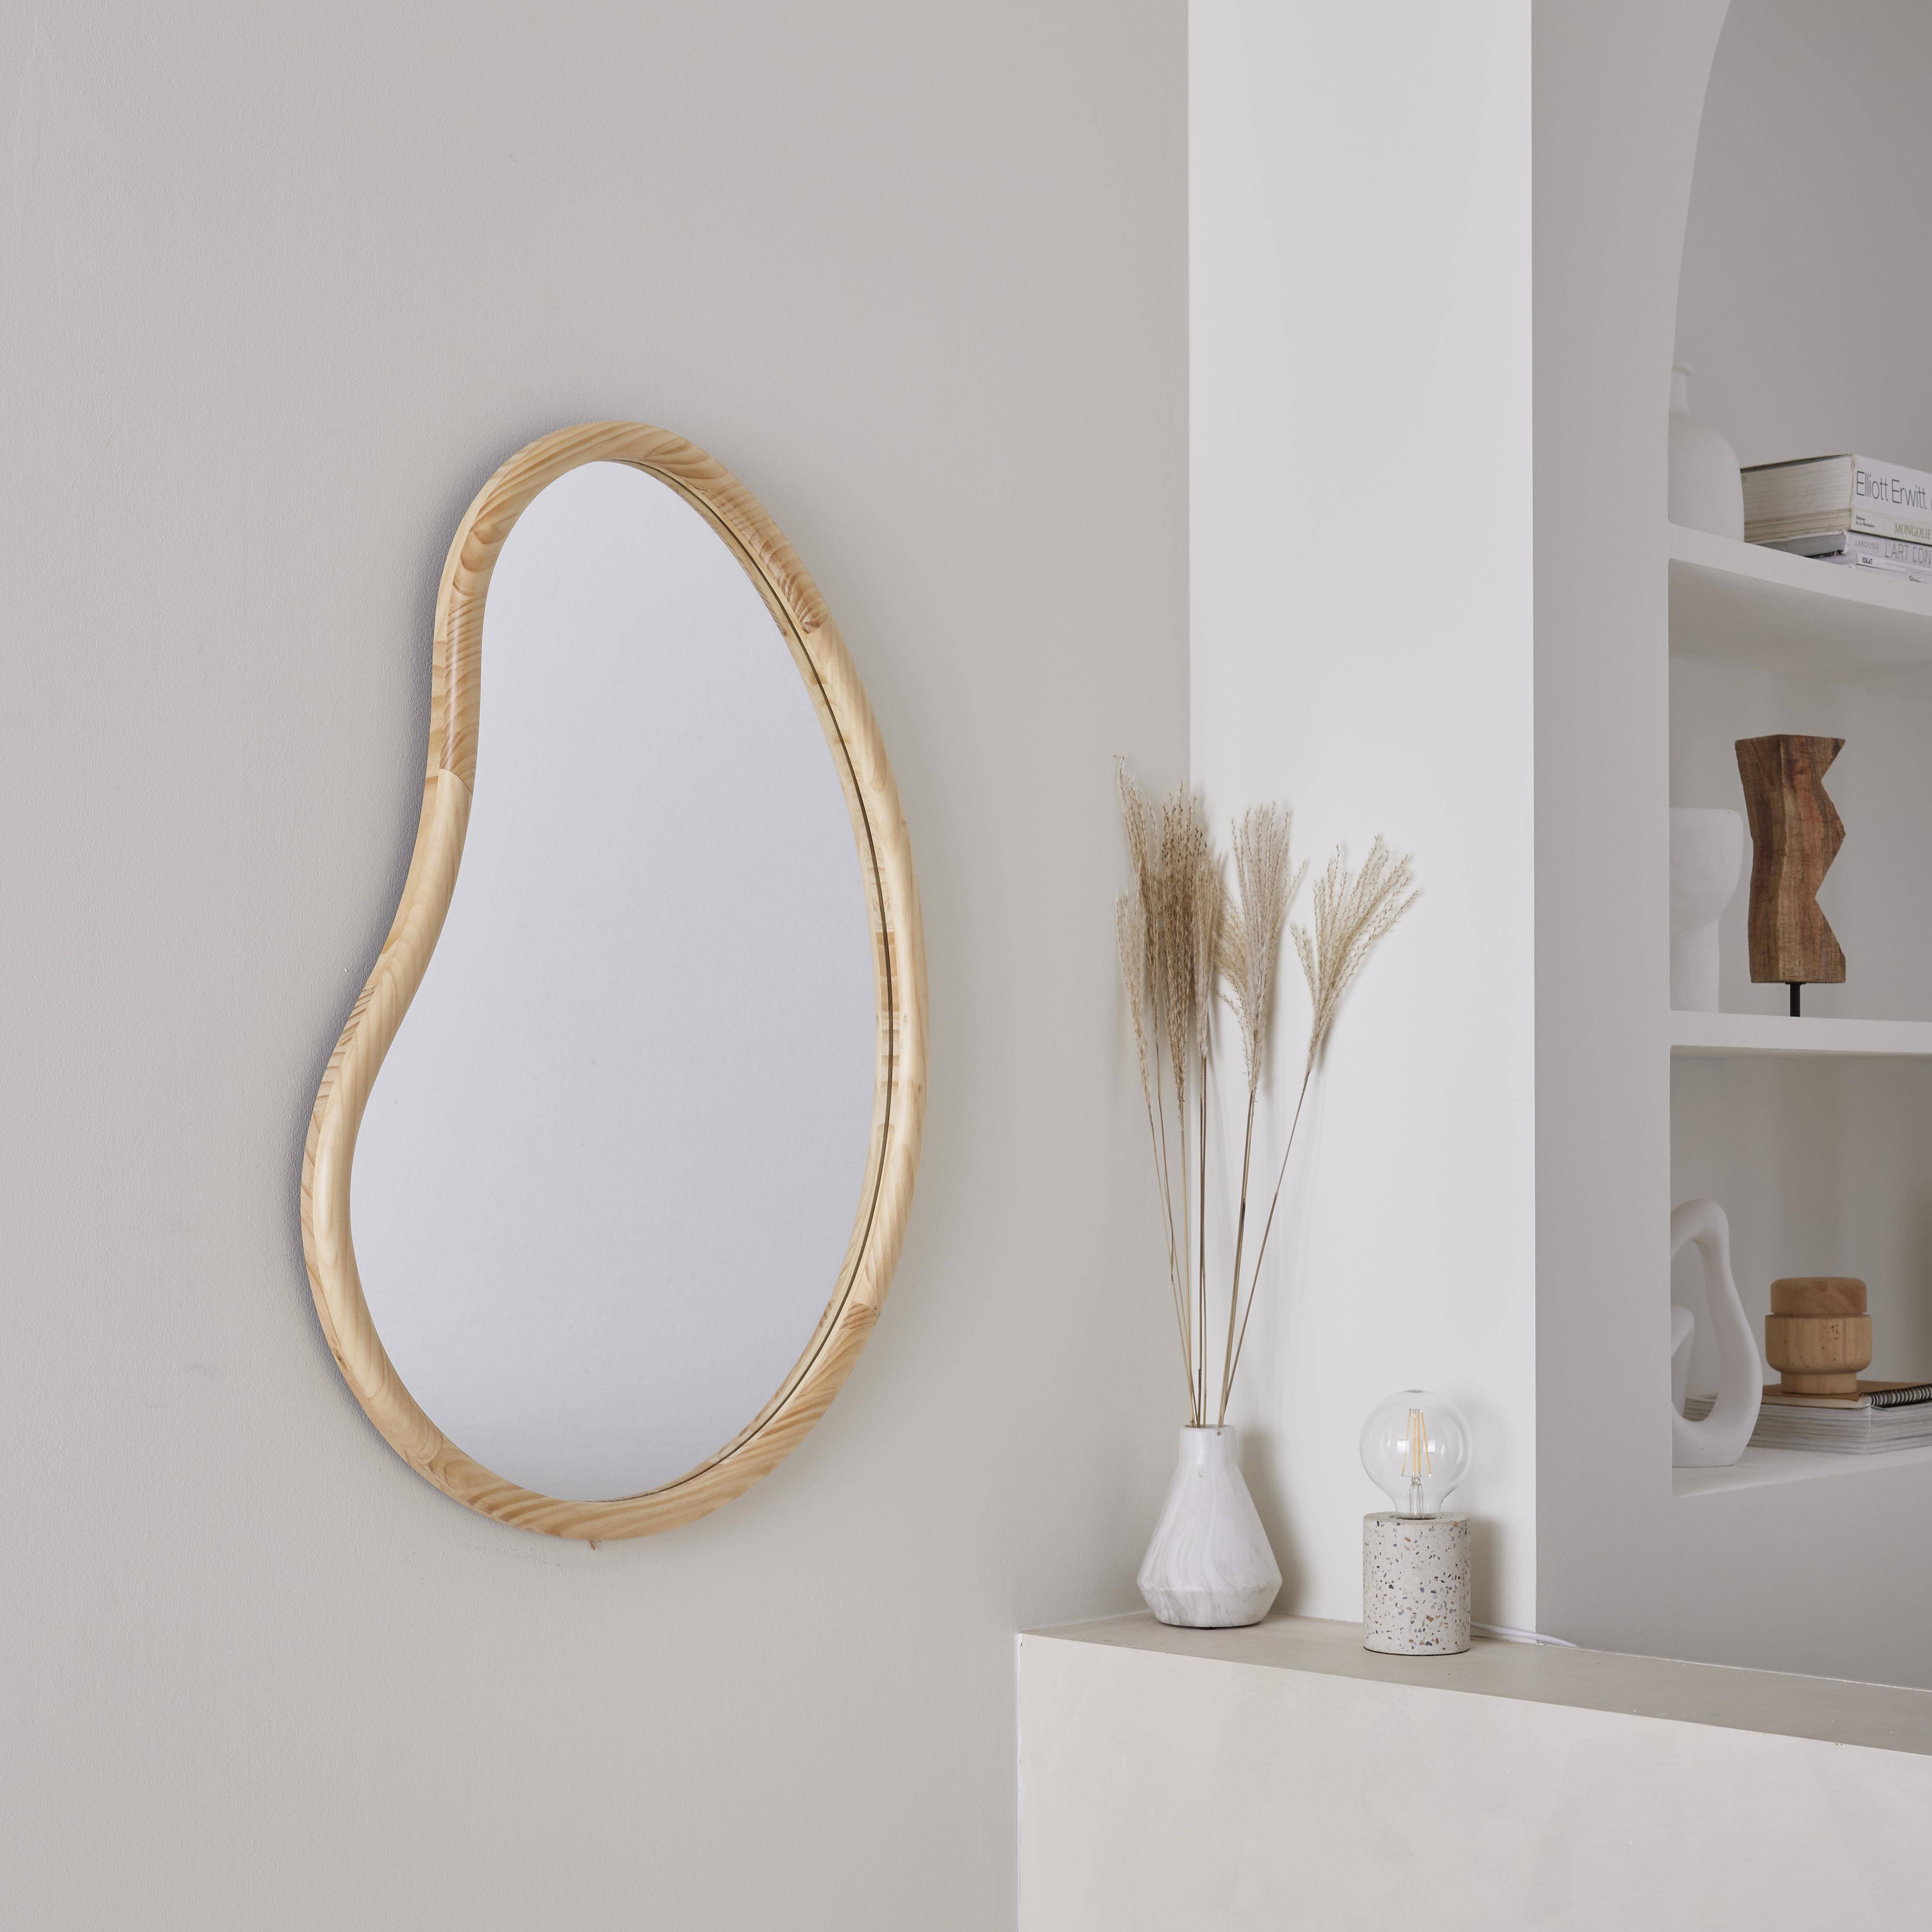 Organischer Spiegel aus Tannenholz 85cm 3cm dick naturfarben ideal für Eingang, Schlafzimmer oder Bad - Jacob,sweeek,Photo1